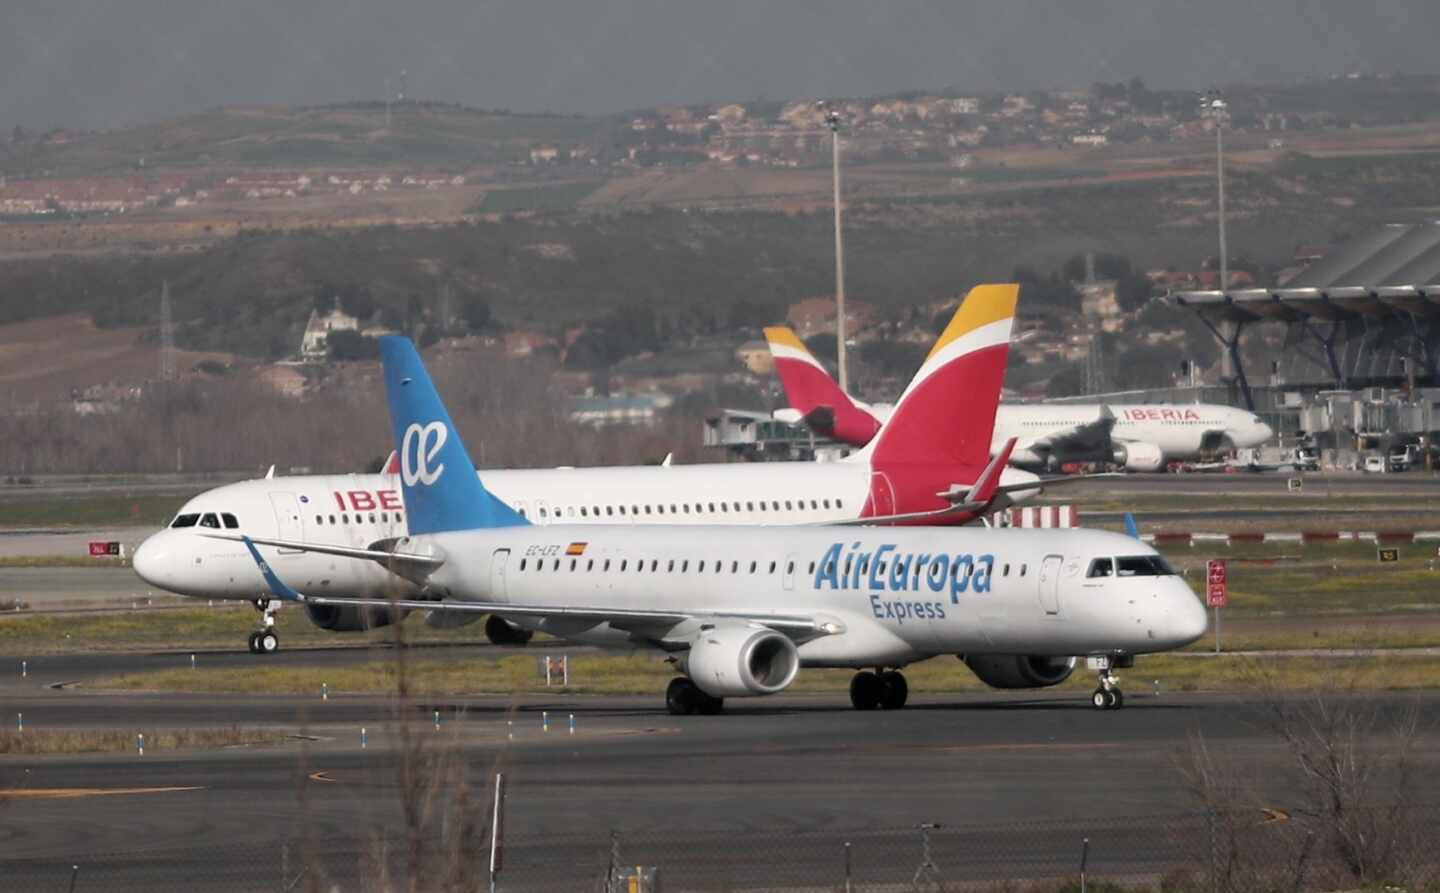 El sindicato británico Unite carga contra Iberia por la compra de Air Europa